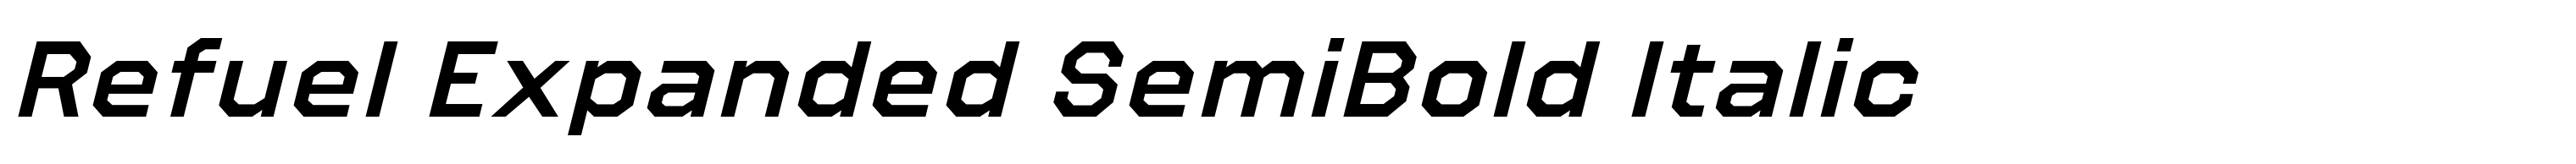 Refuel Expanded SemiBold Italic